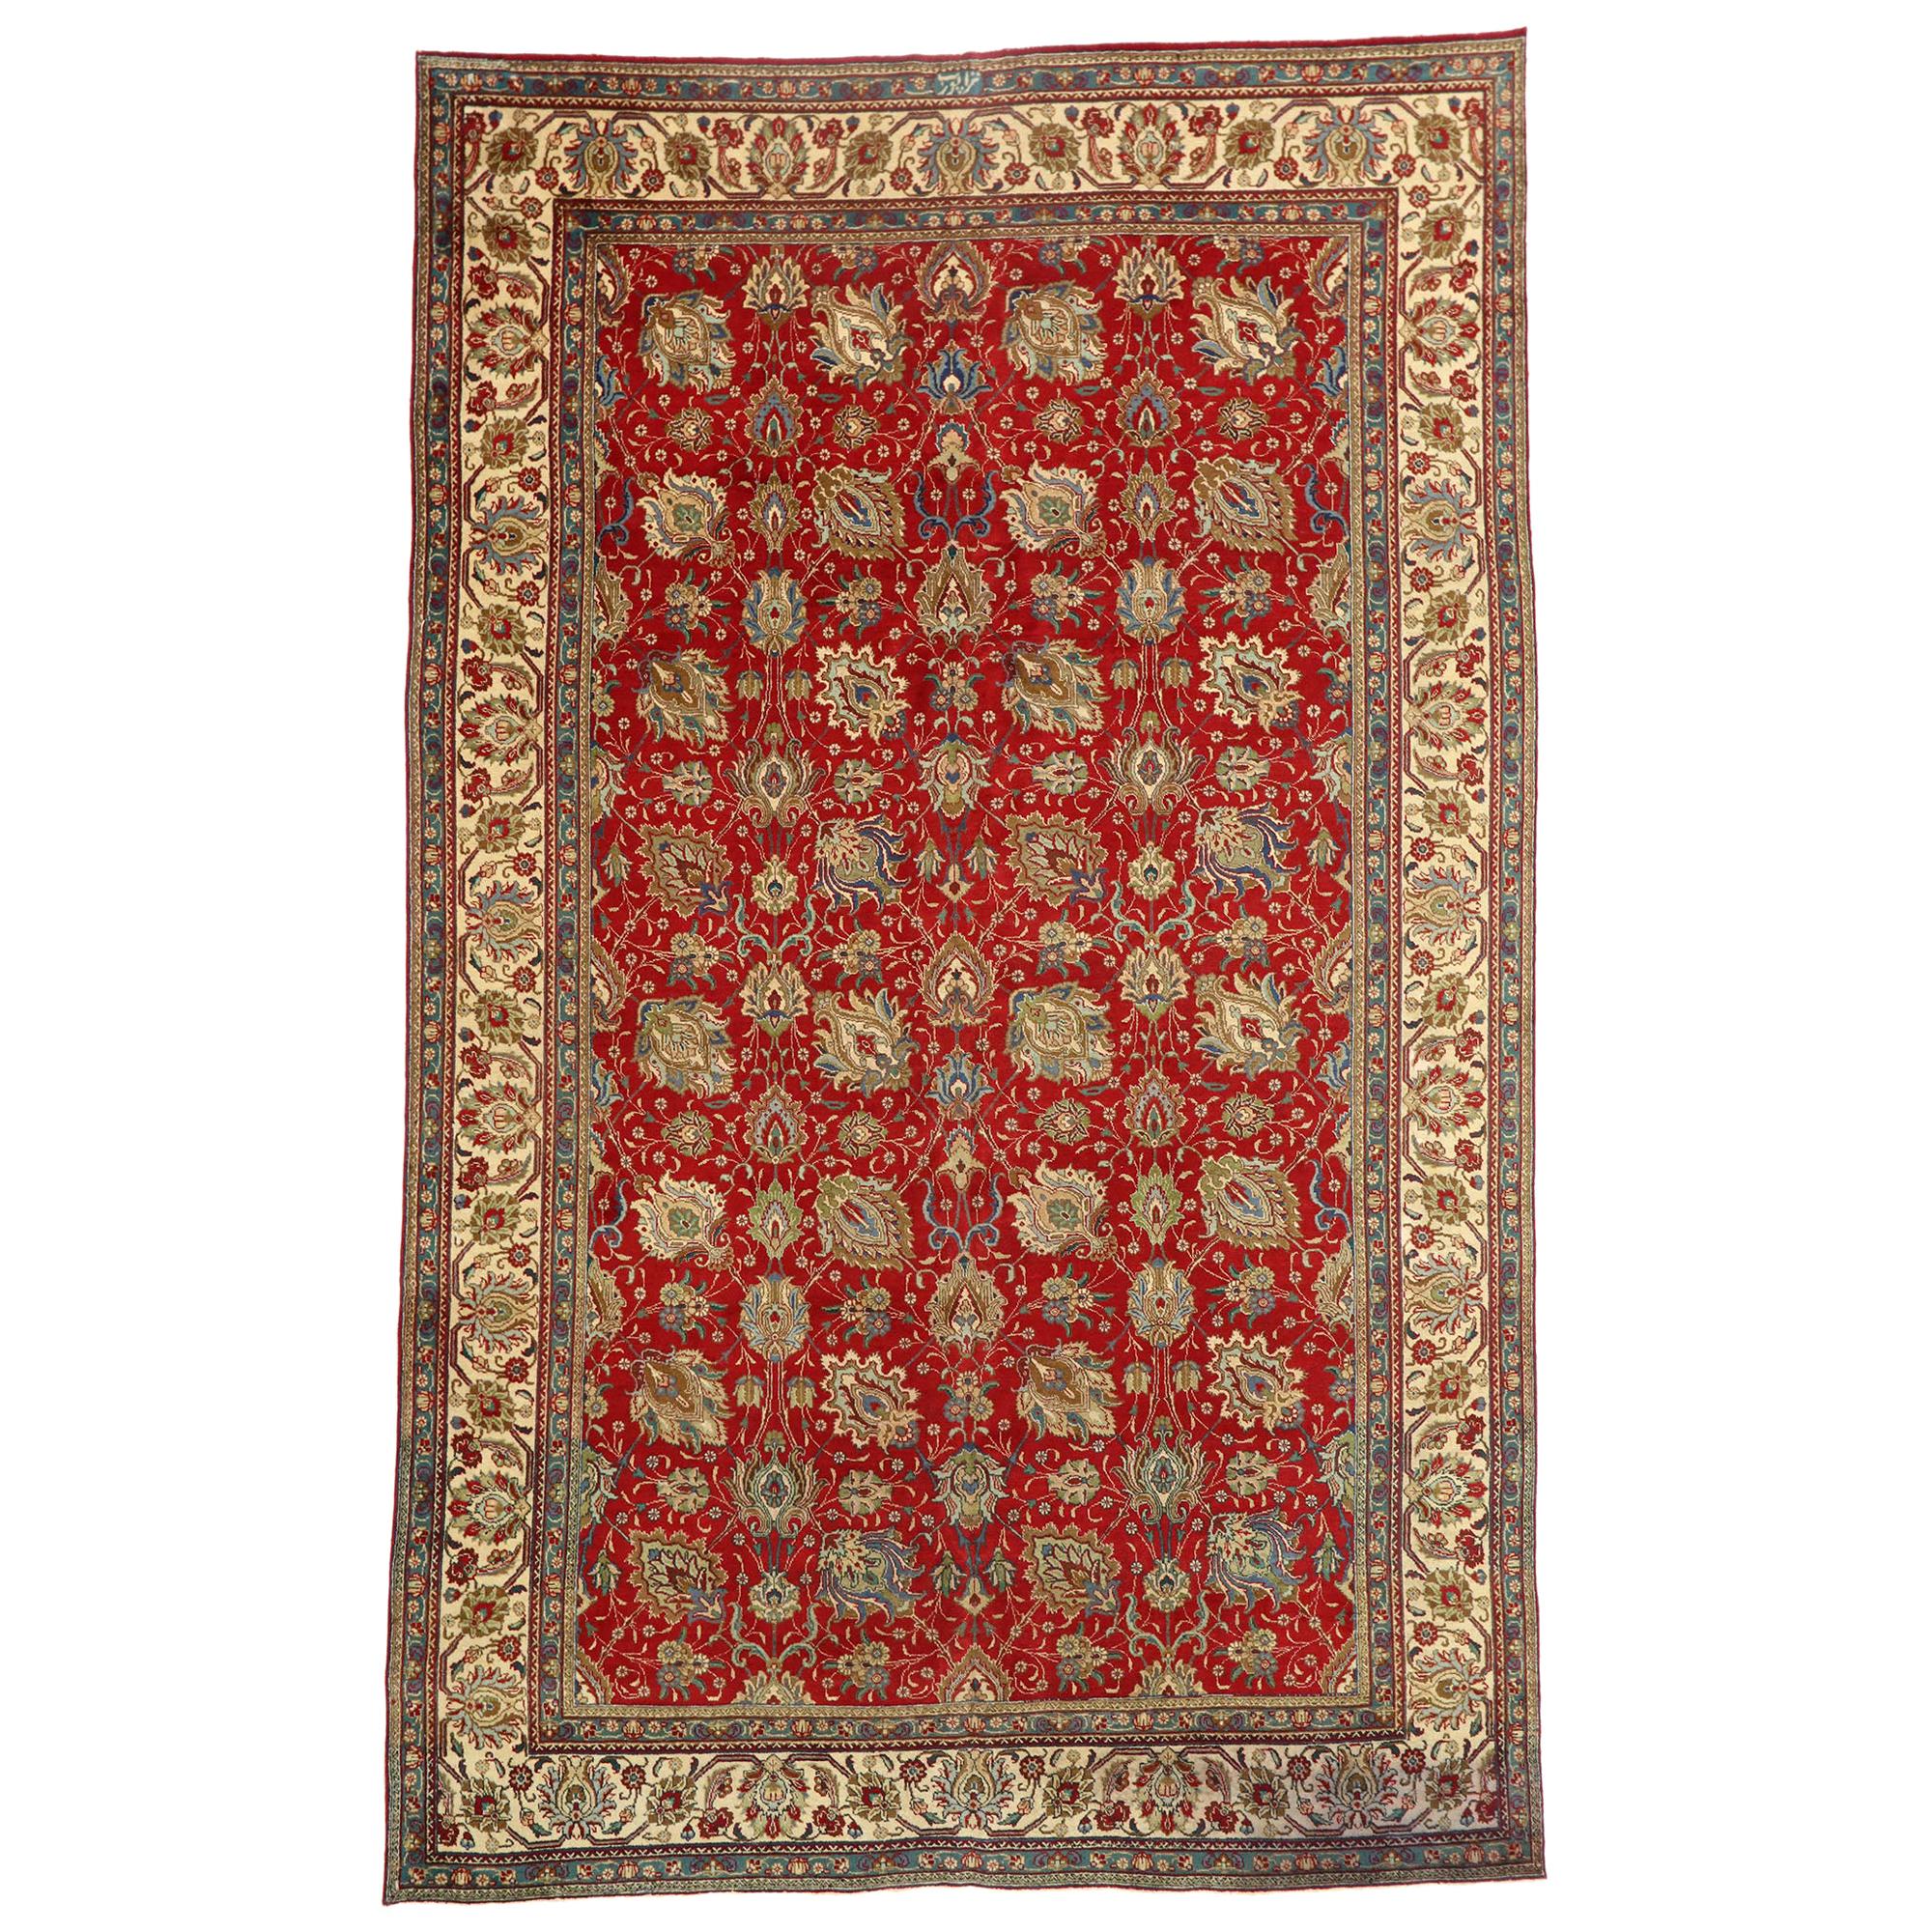 Persischer Täbriz-Palast-Teppich im traditionellen Kolonial- und Federal-Stil